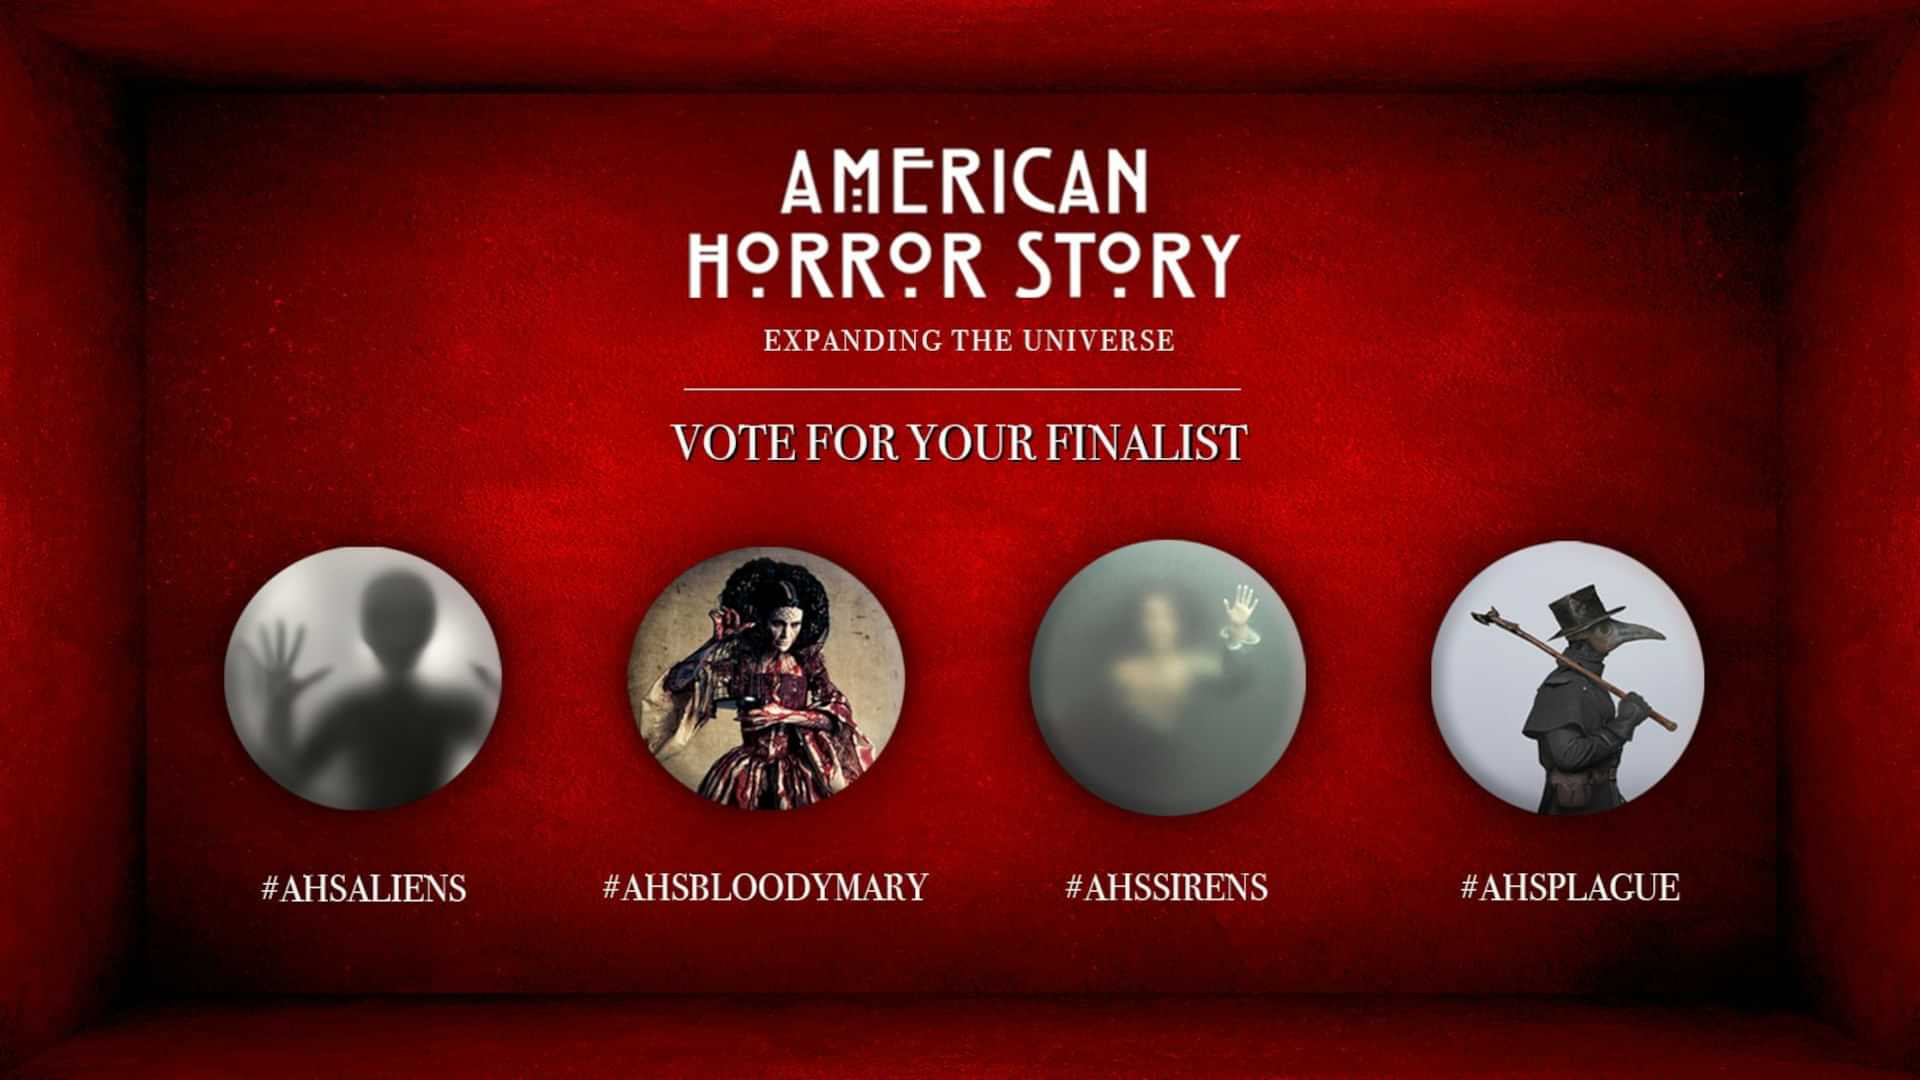 Tvorca ‚American Horror Story‘ chce od teba vedieť, ktorý príbeh sa dočká televízneho spracovania